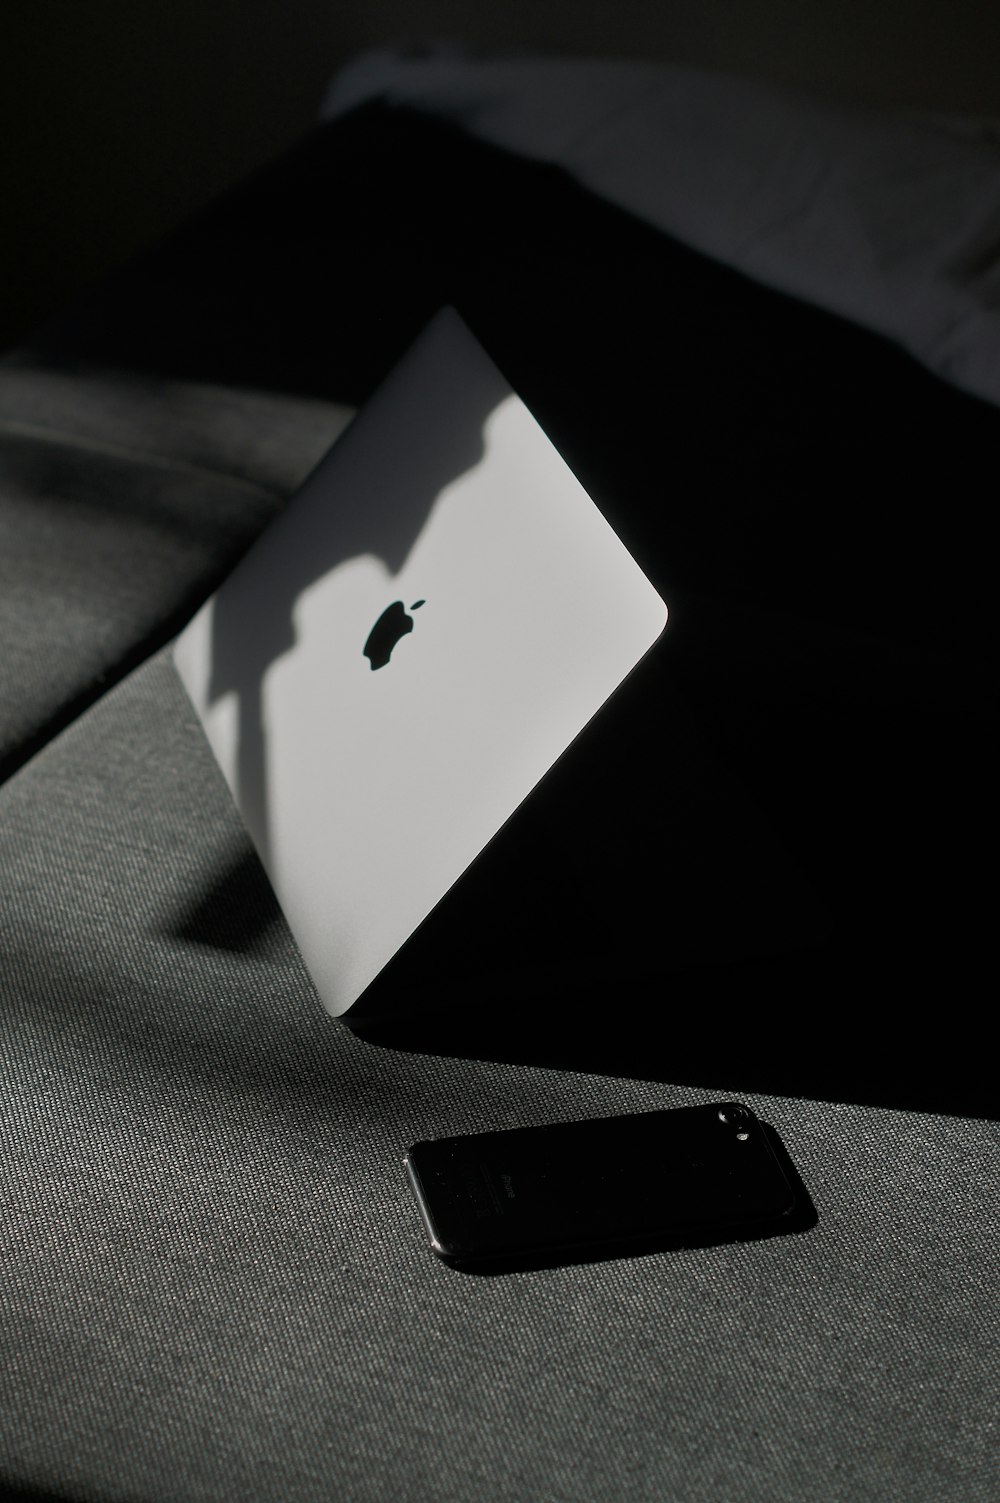 iPhone beside MacBook